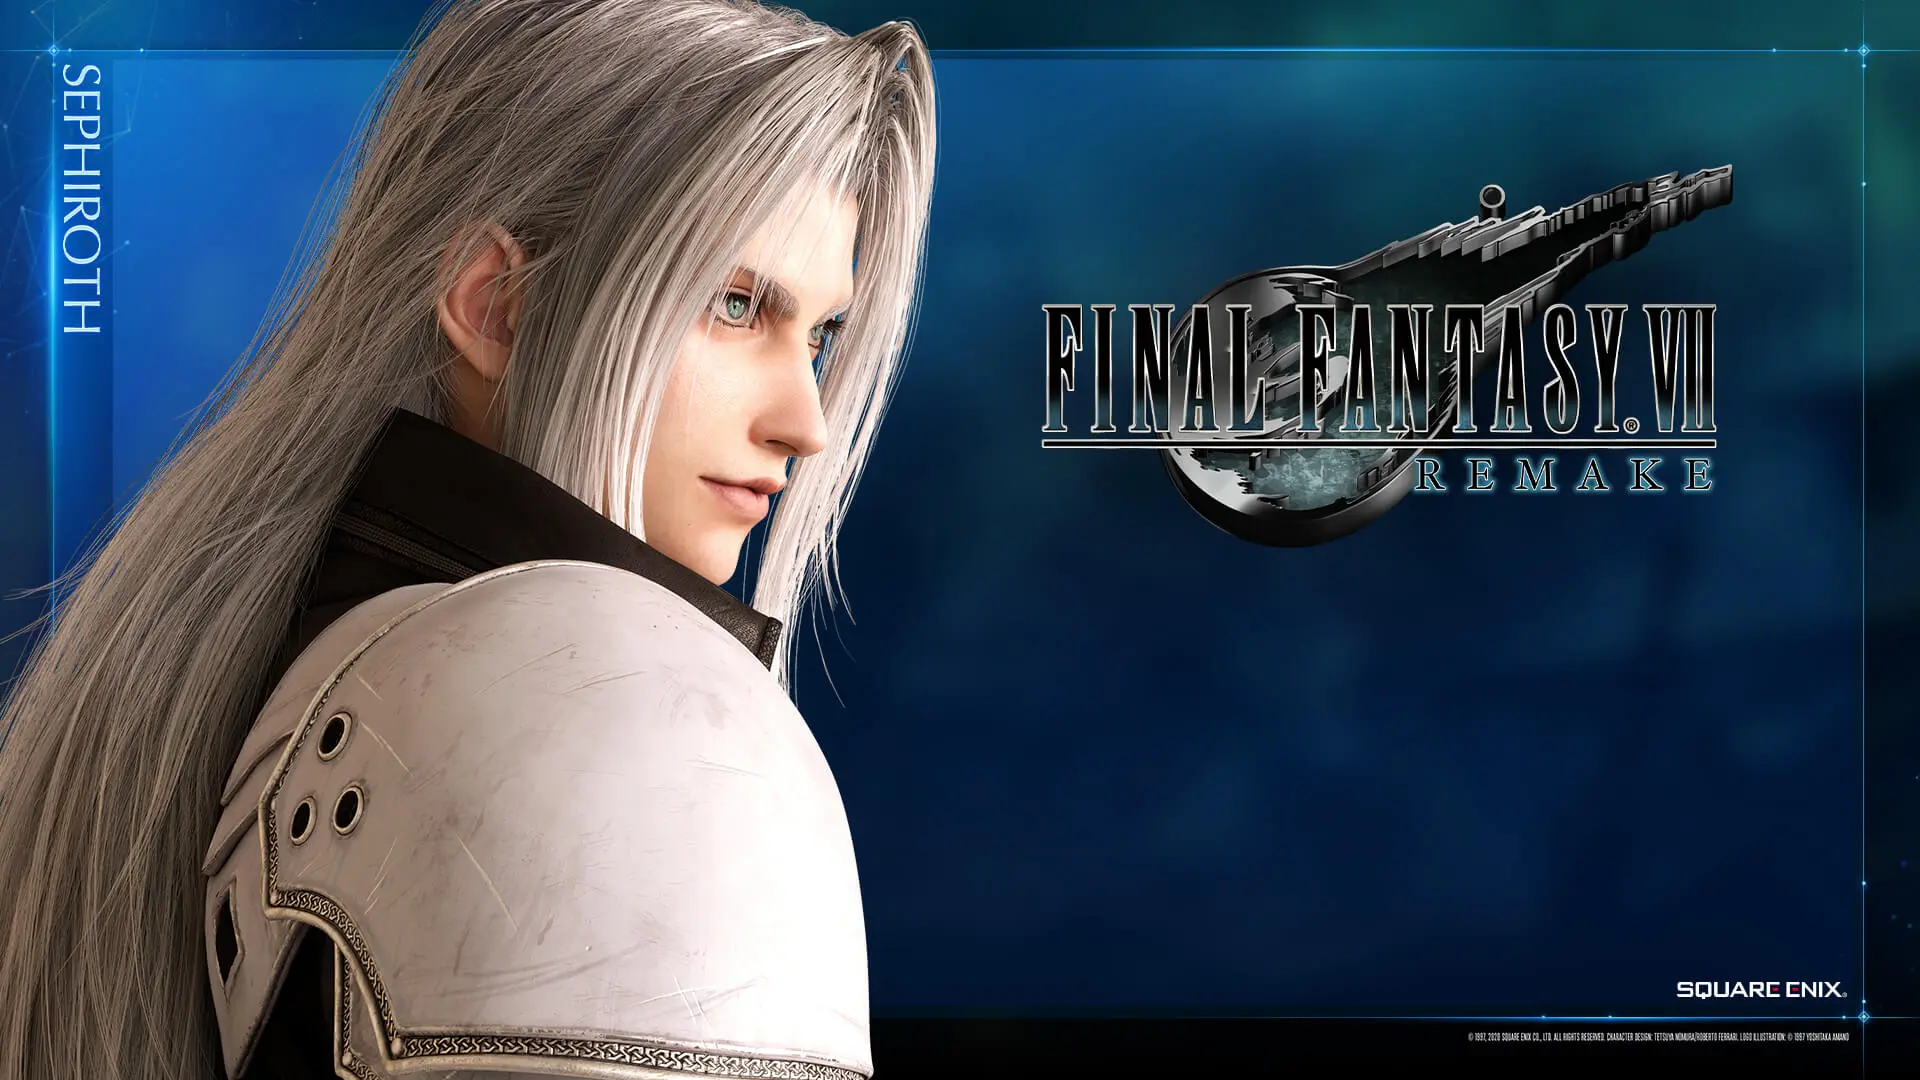 Cópias físicas de Final Fantasy VII Remake podem atrasar, diz Square Enix